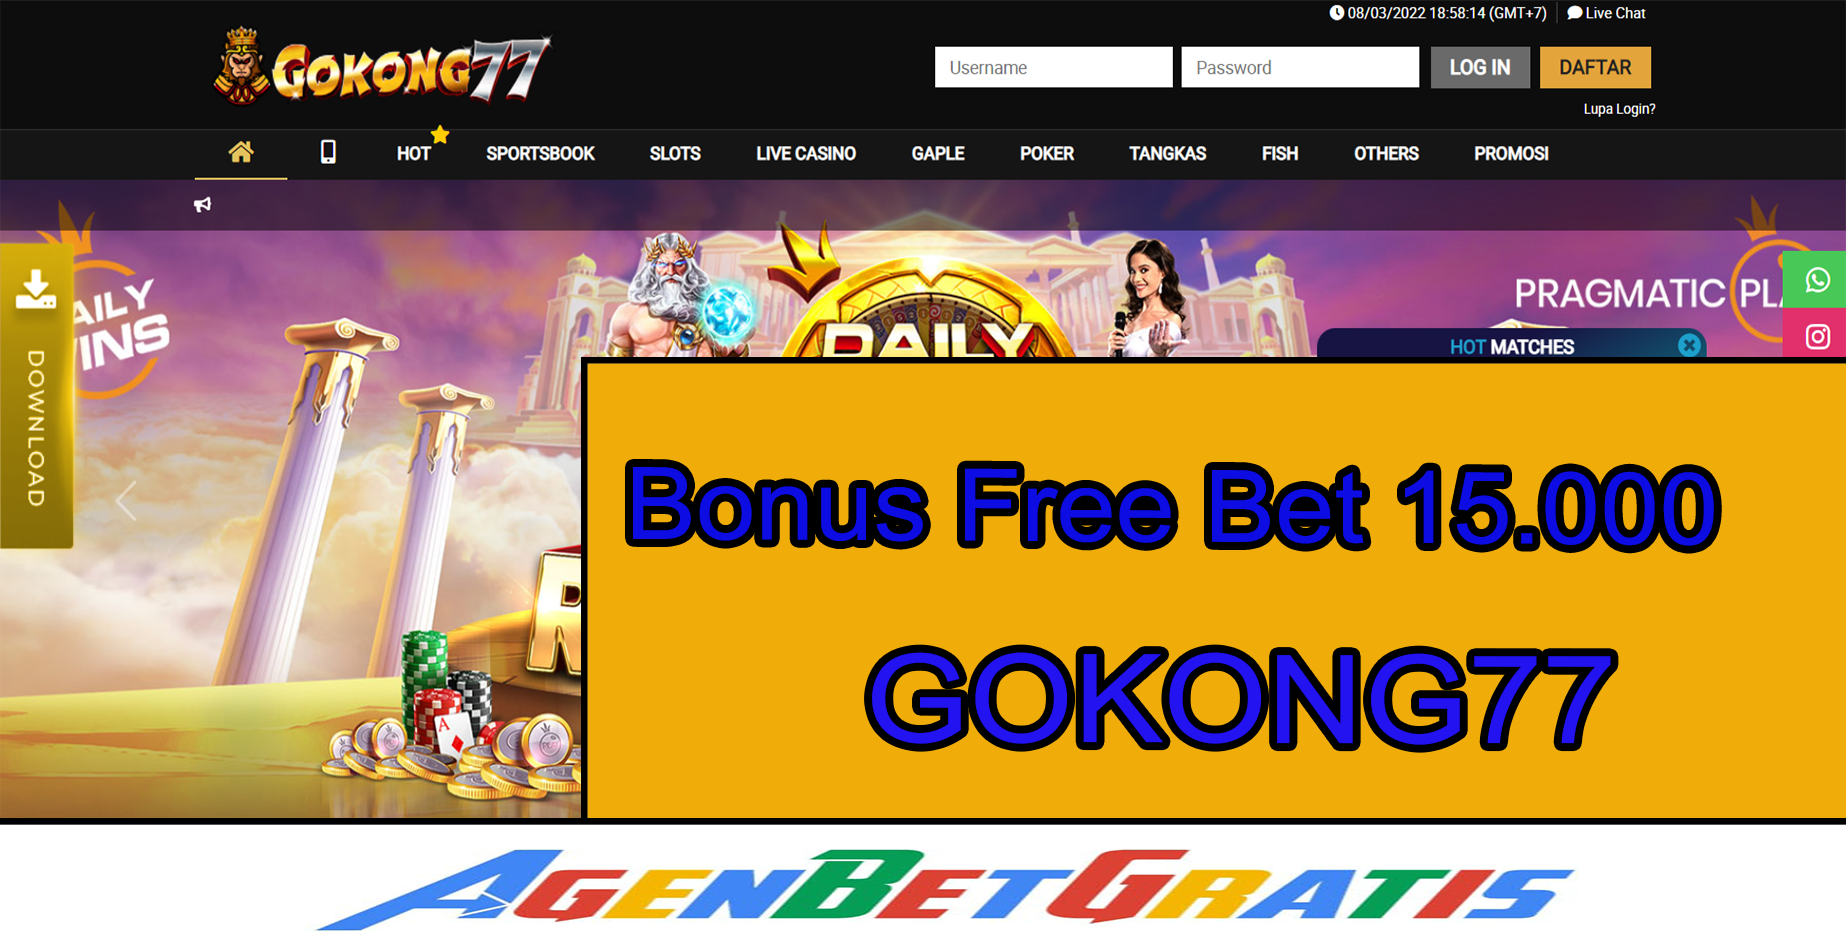 GOKONG77 - Bonus FreeBet 15.000